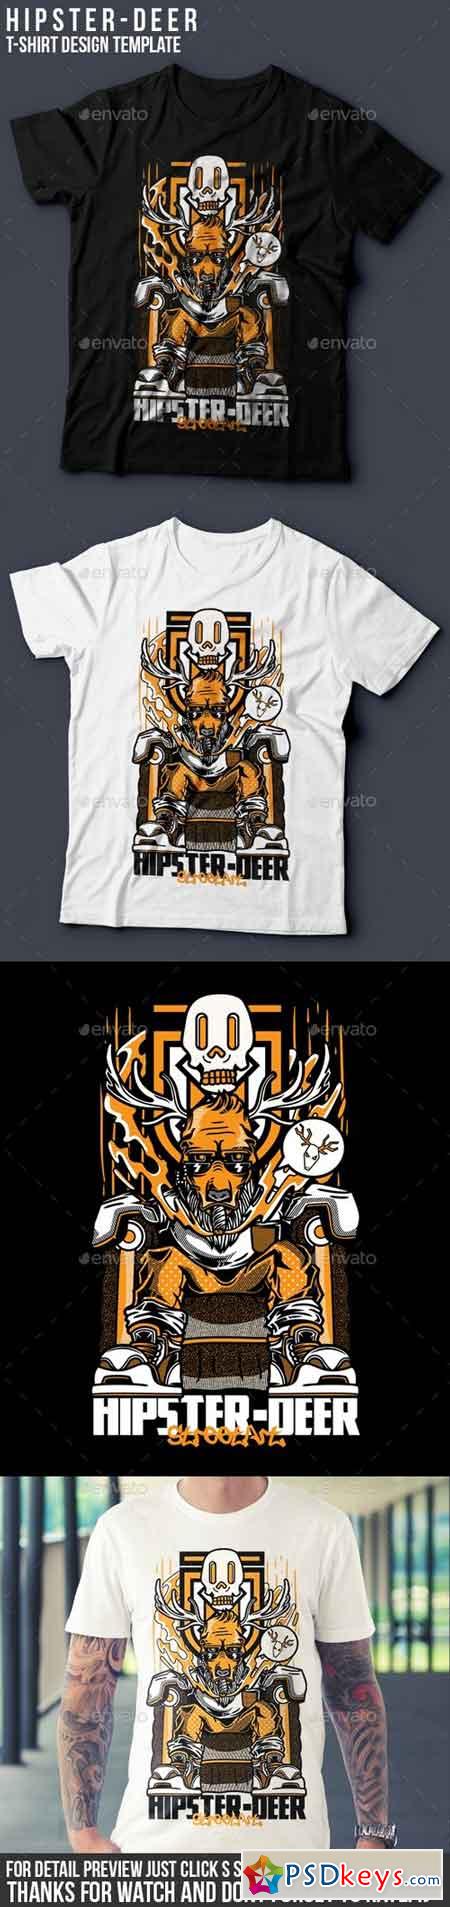 Hipster-Deer T-Shirt Design 18075031